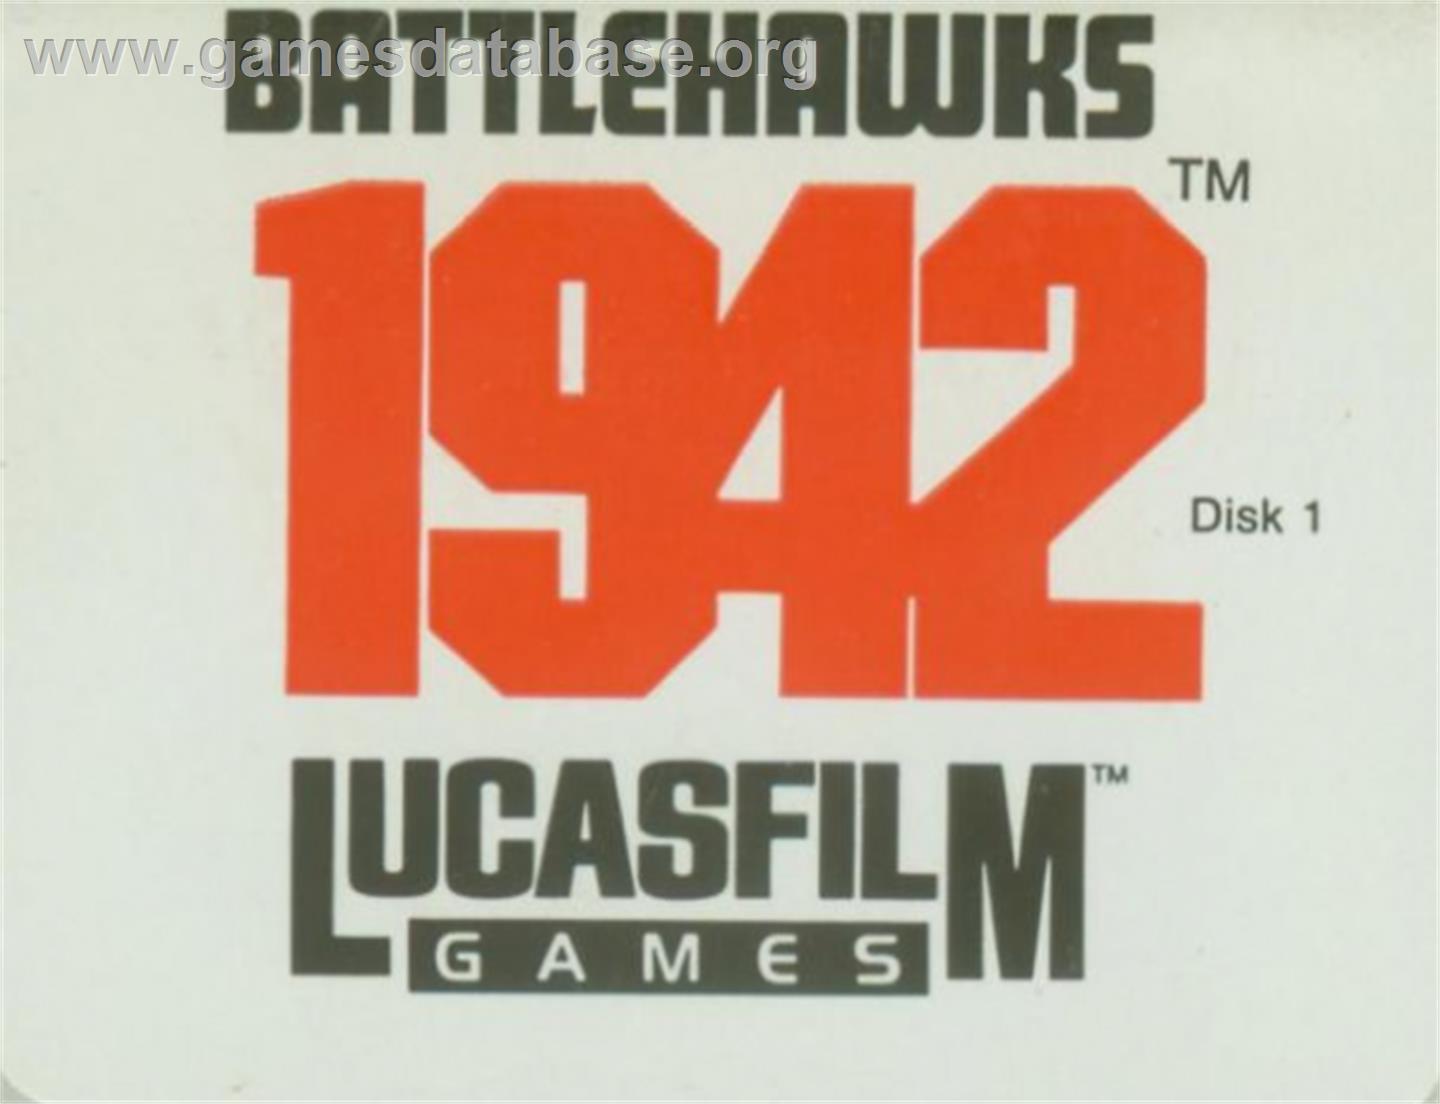 Battlehawks 1942 - Atari ST - Artwork - Cartridge Top